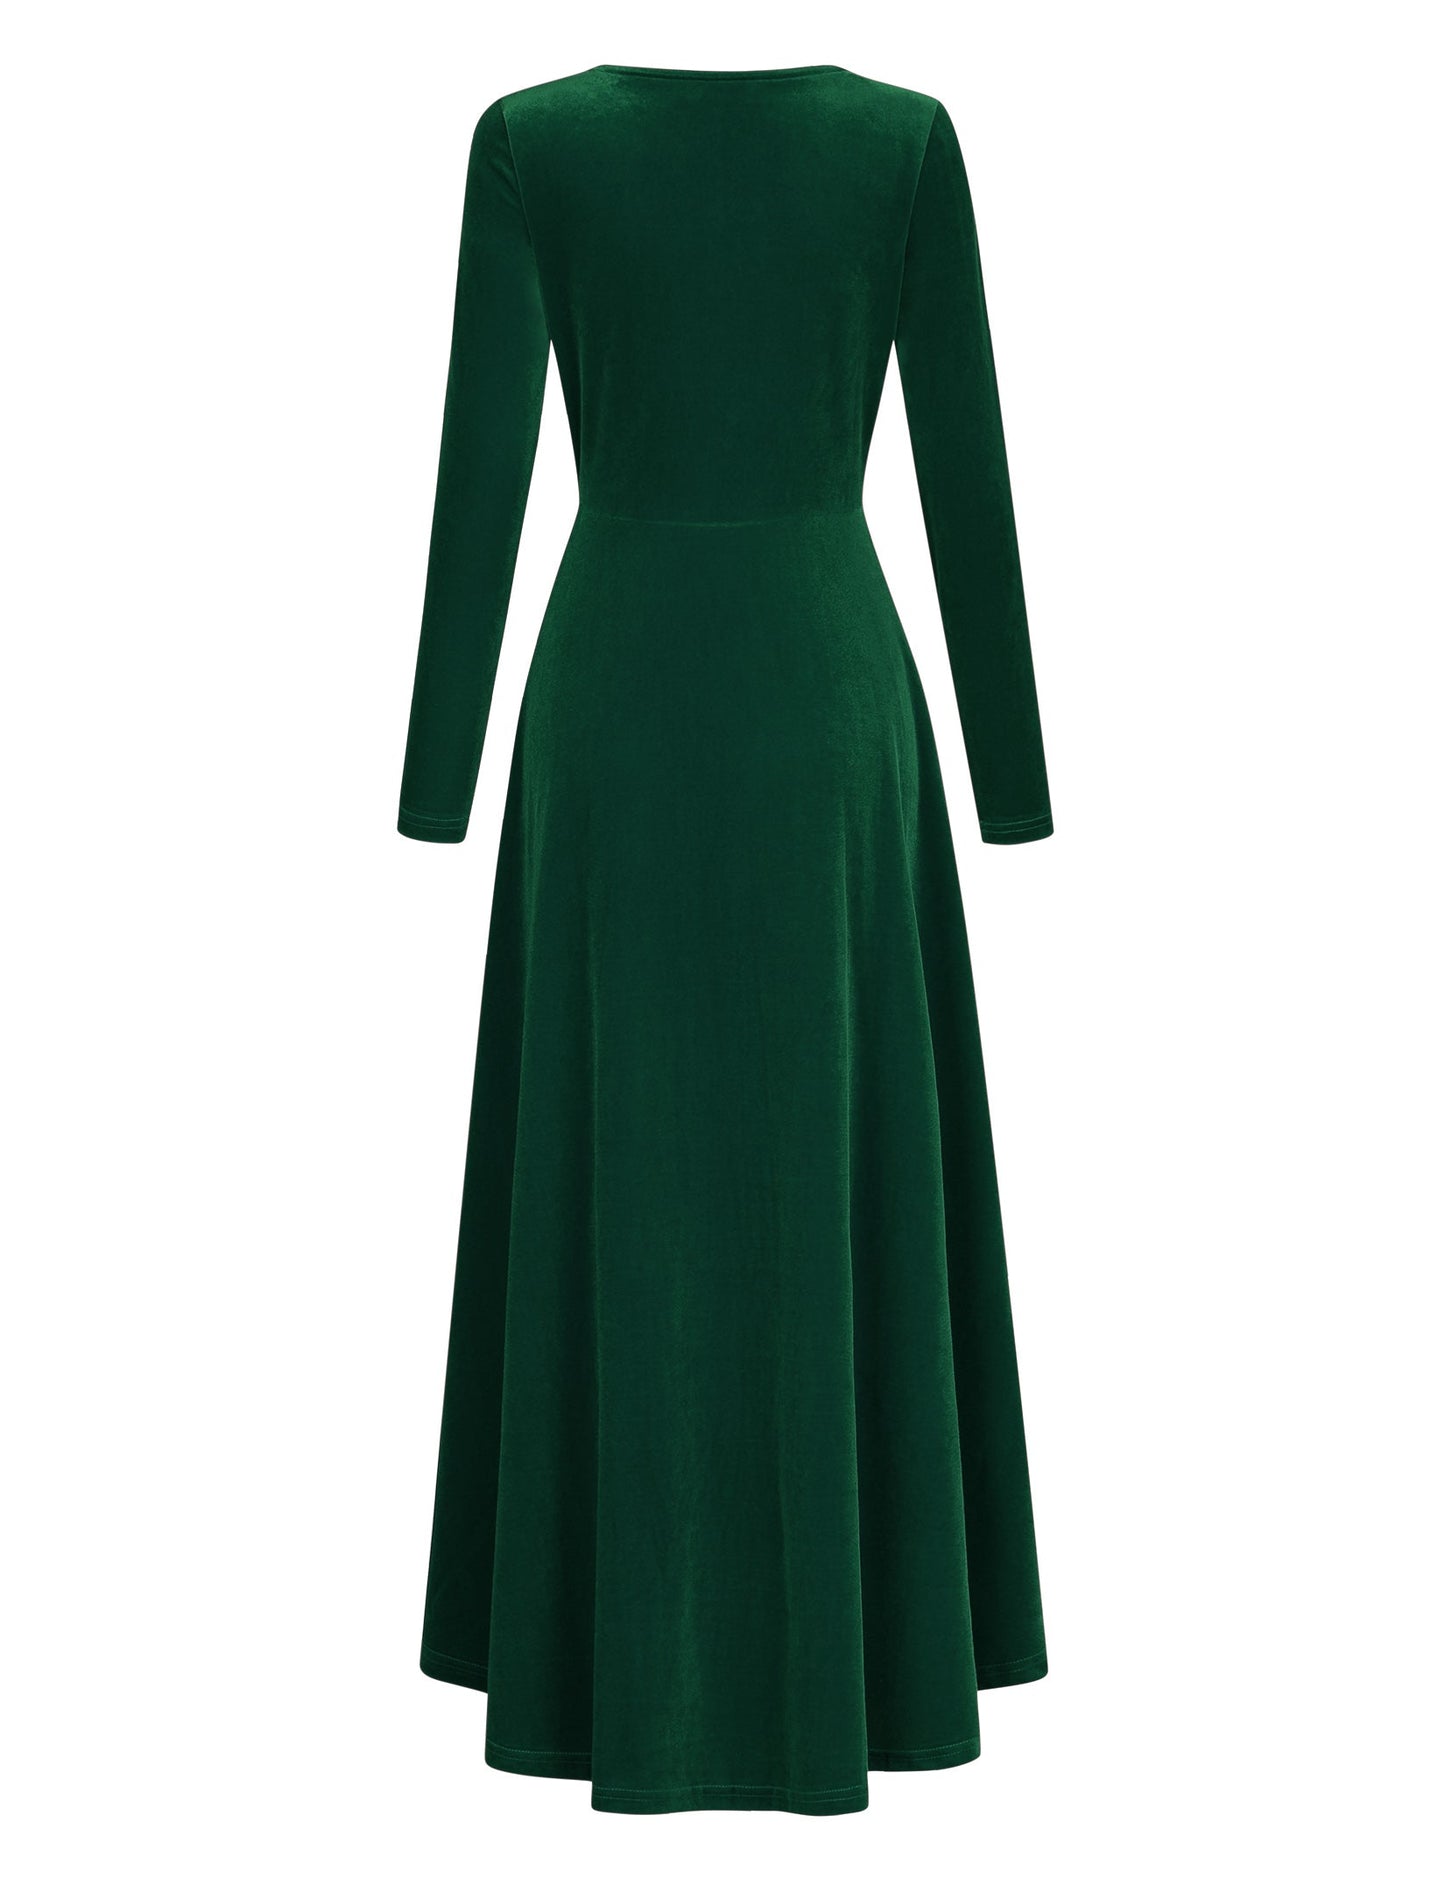 YESFASHION Women's V-Neck Velvet Smart Formal Party Maxi Dress Green